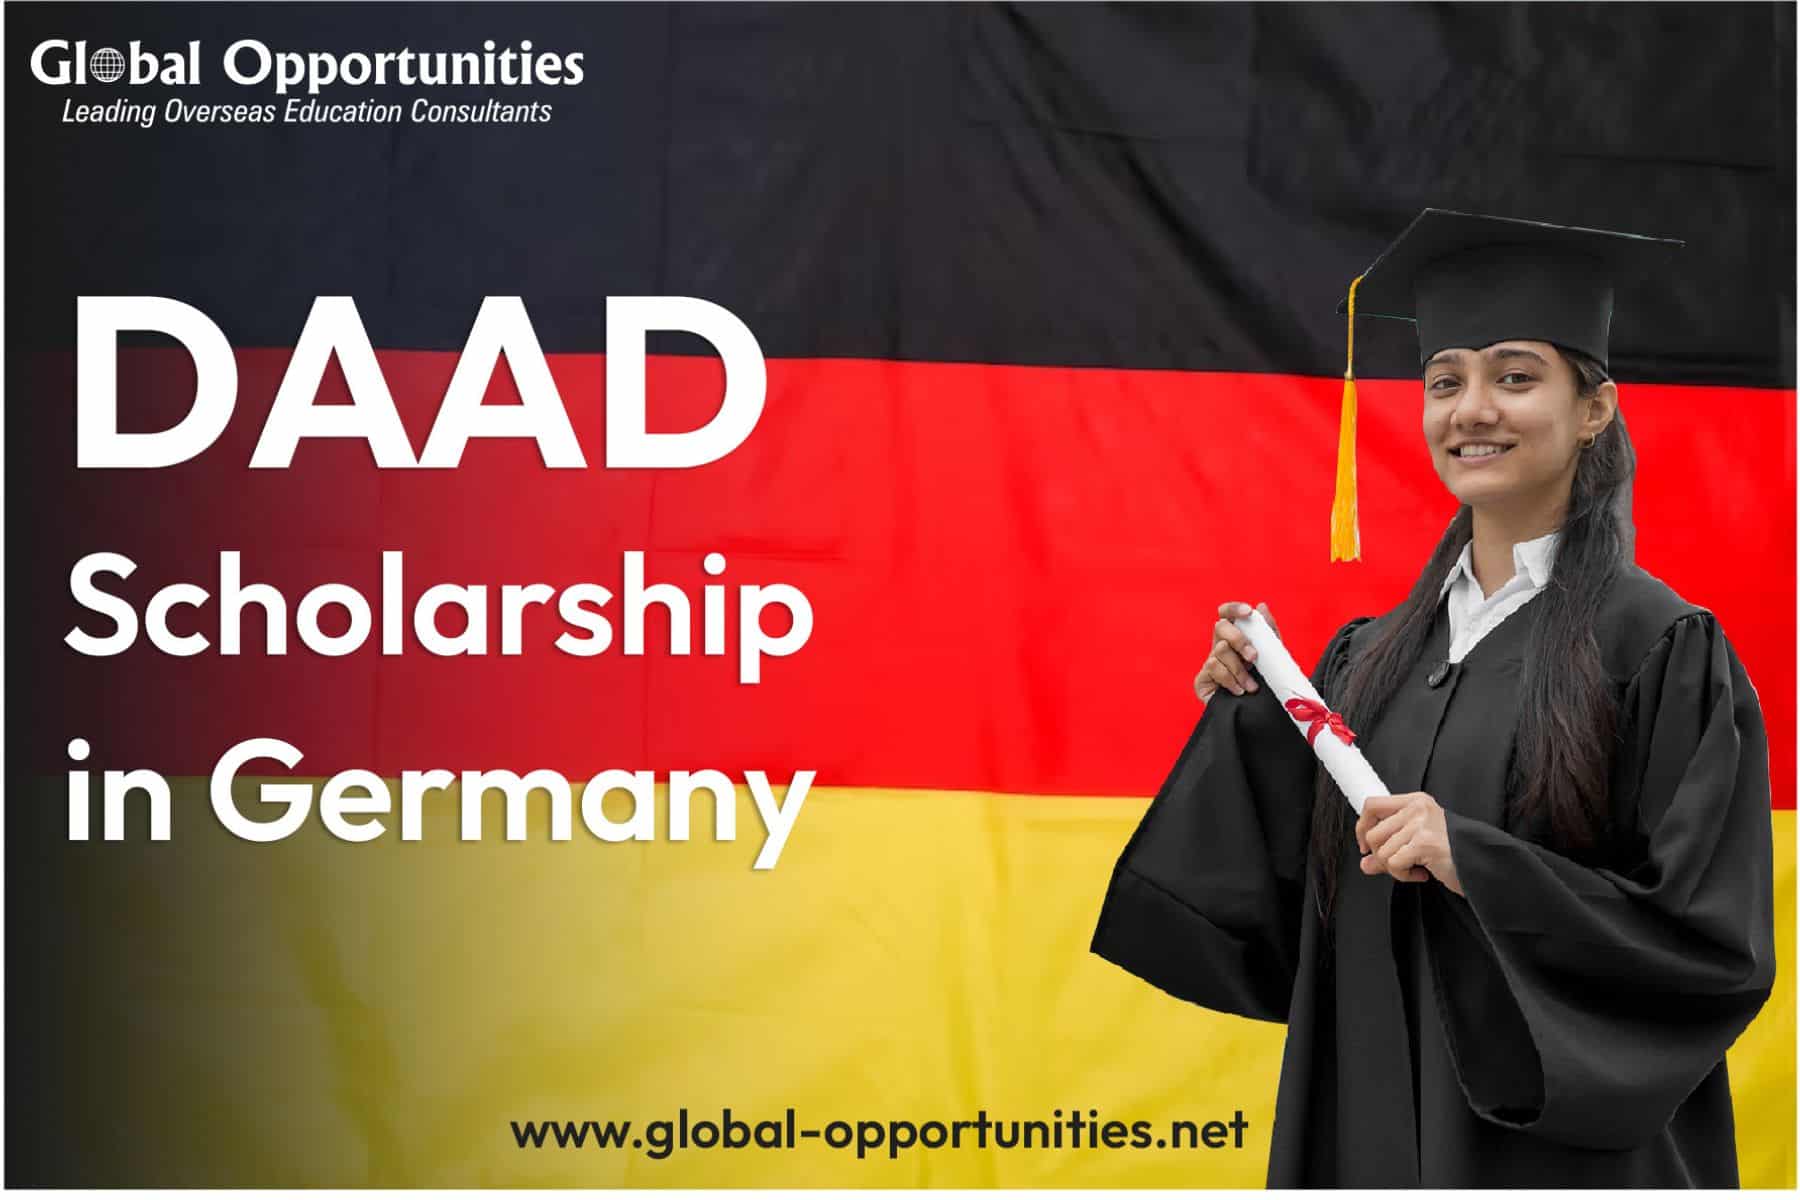 daad, daad scholarship, daad germany, daad international programs, daad scholarship germany, daad india, daad german universities